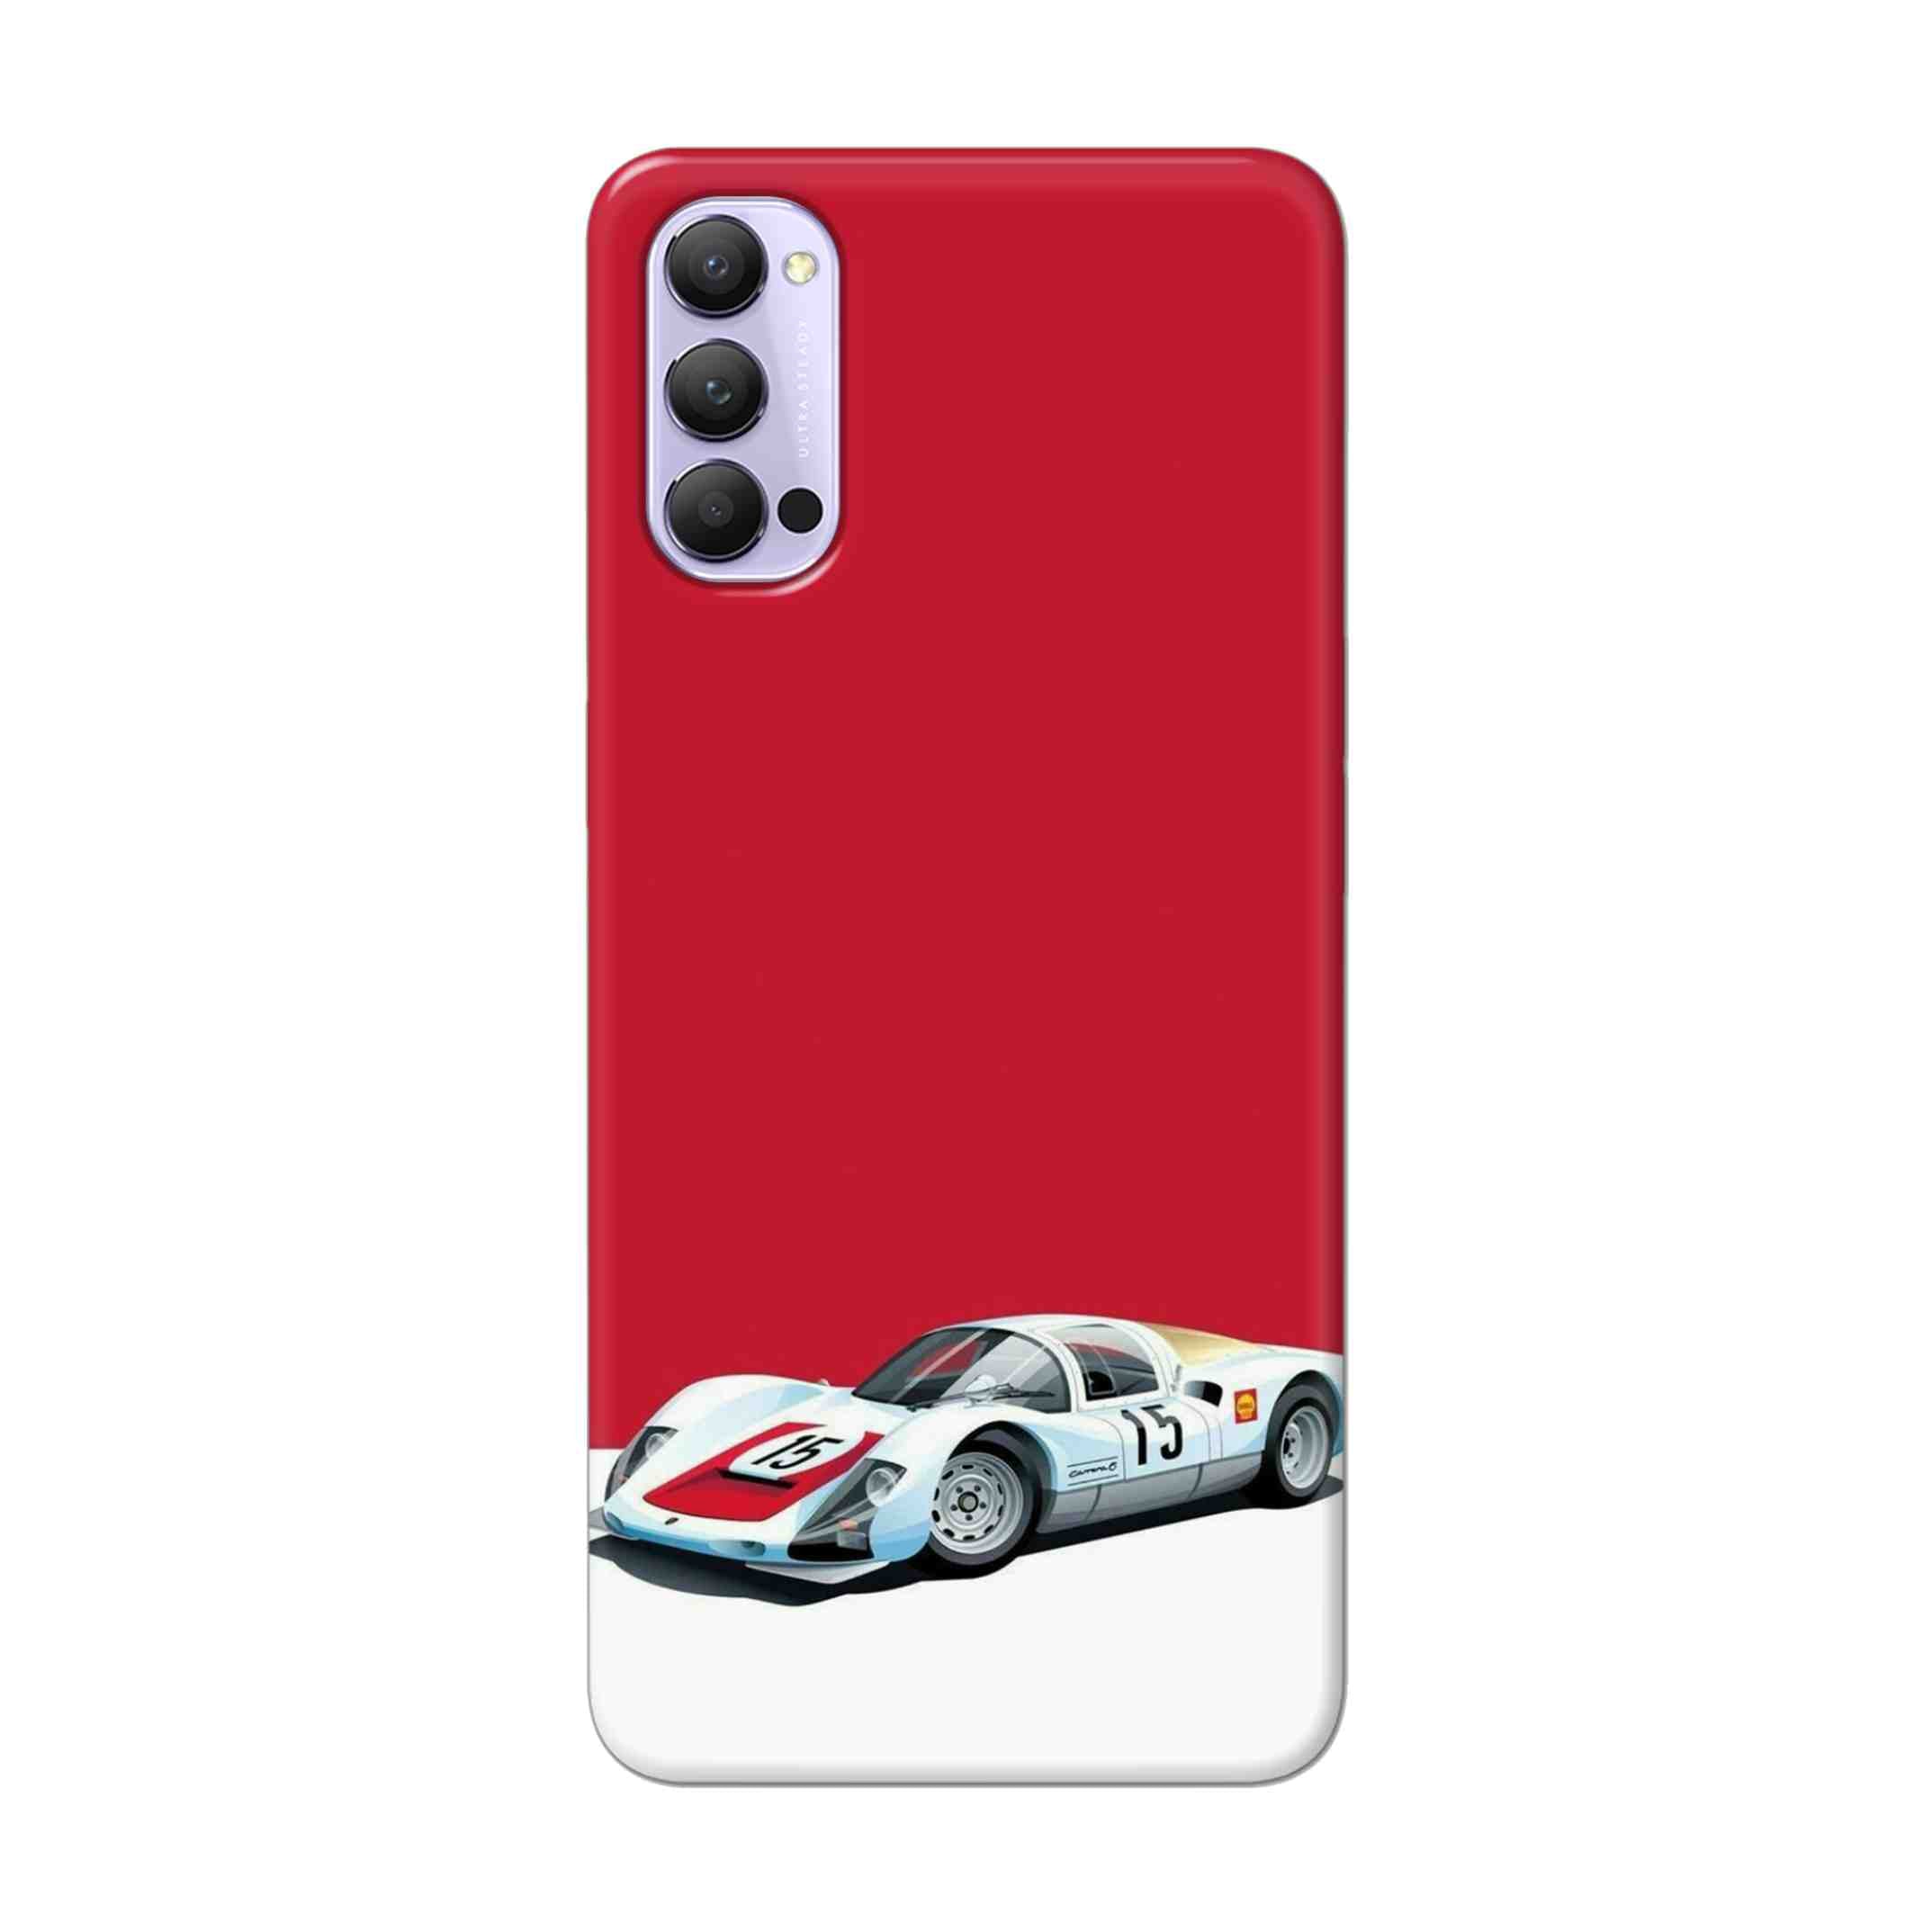 Buy Ferrari F15 Hard Back Mobile Phone Case Cover For Oppo Reno 4 Pro Online